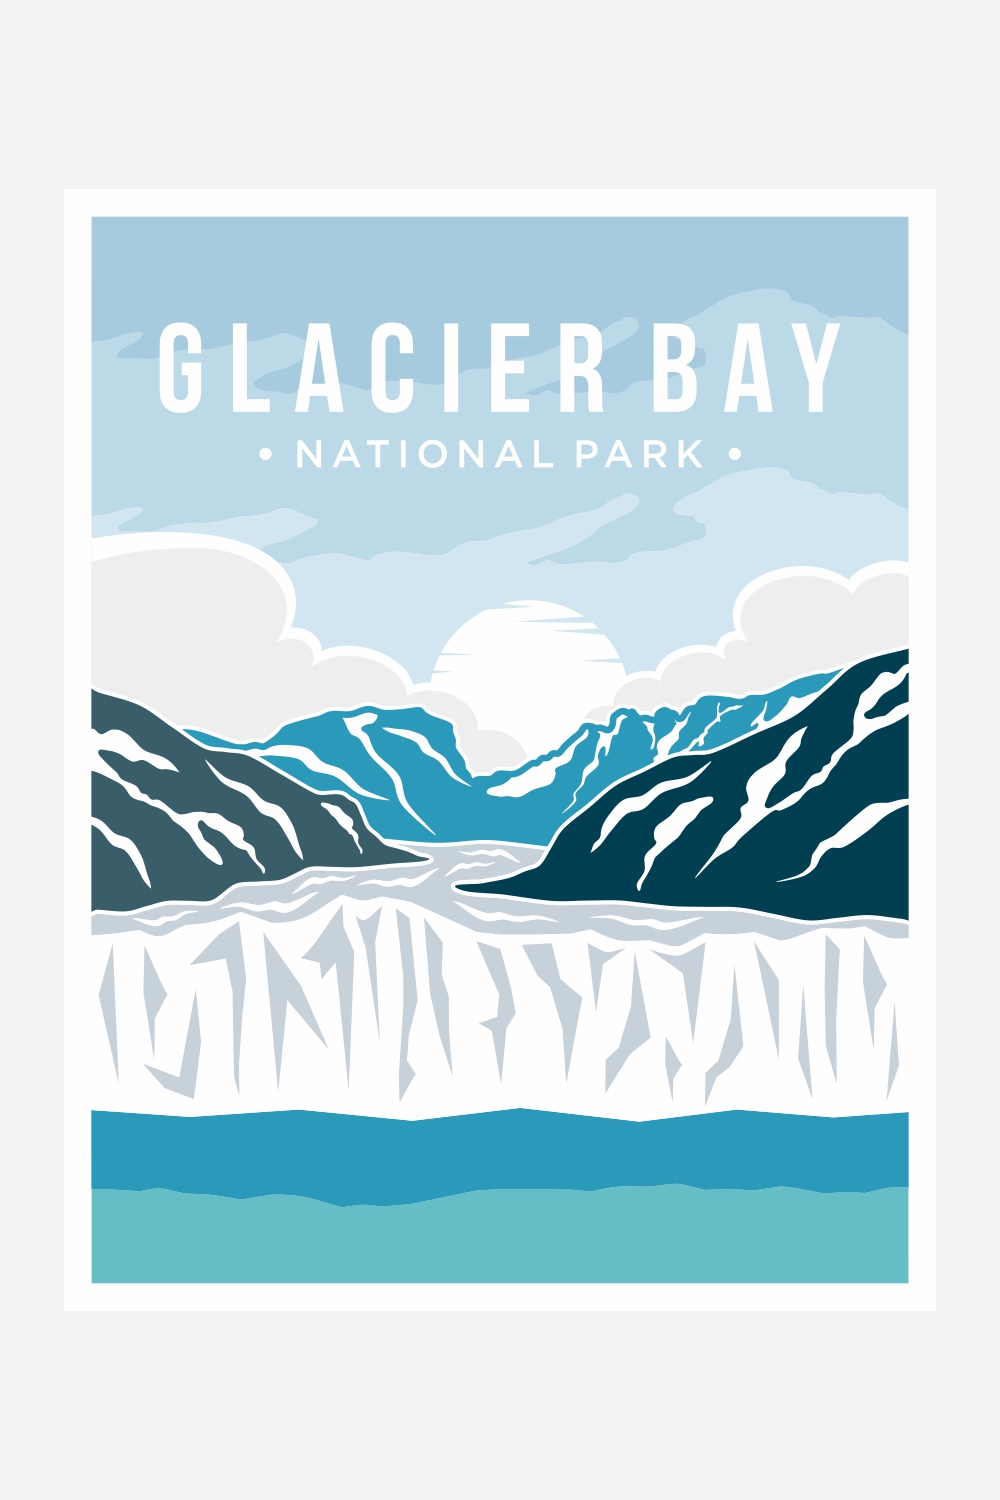 Glacier Bay National Park poster vector illustration design – Only $8 pinterest preview image.